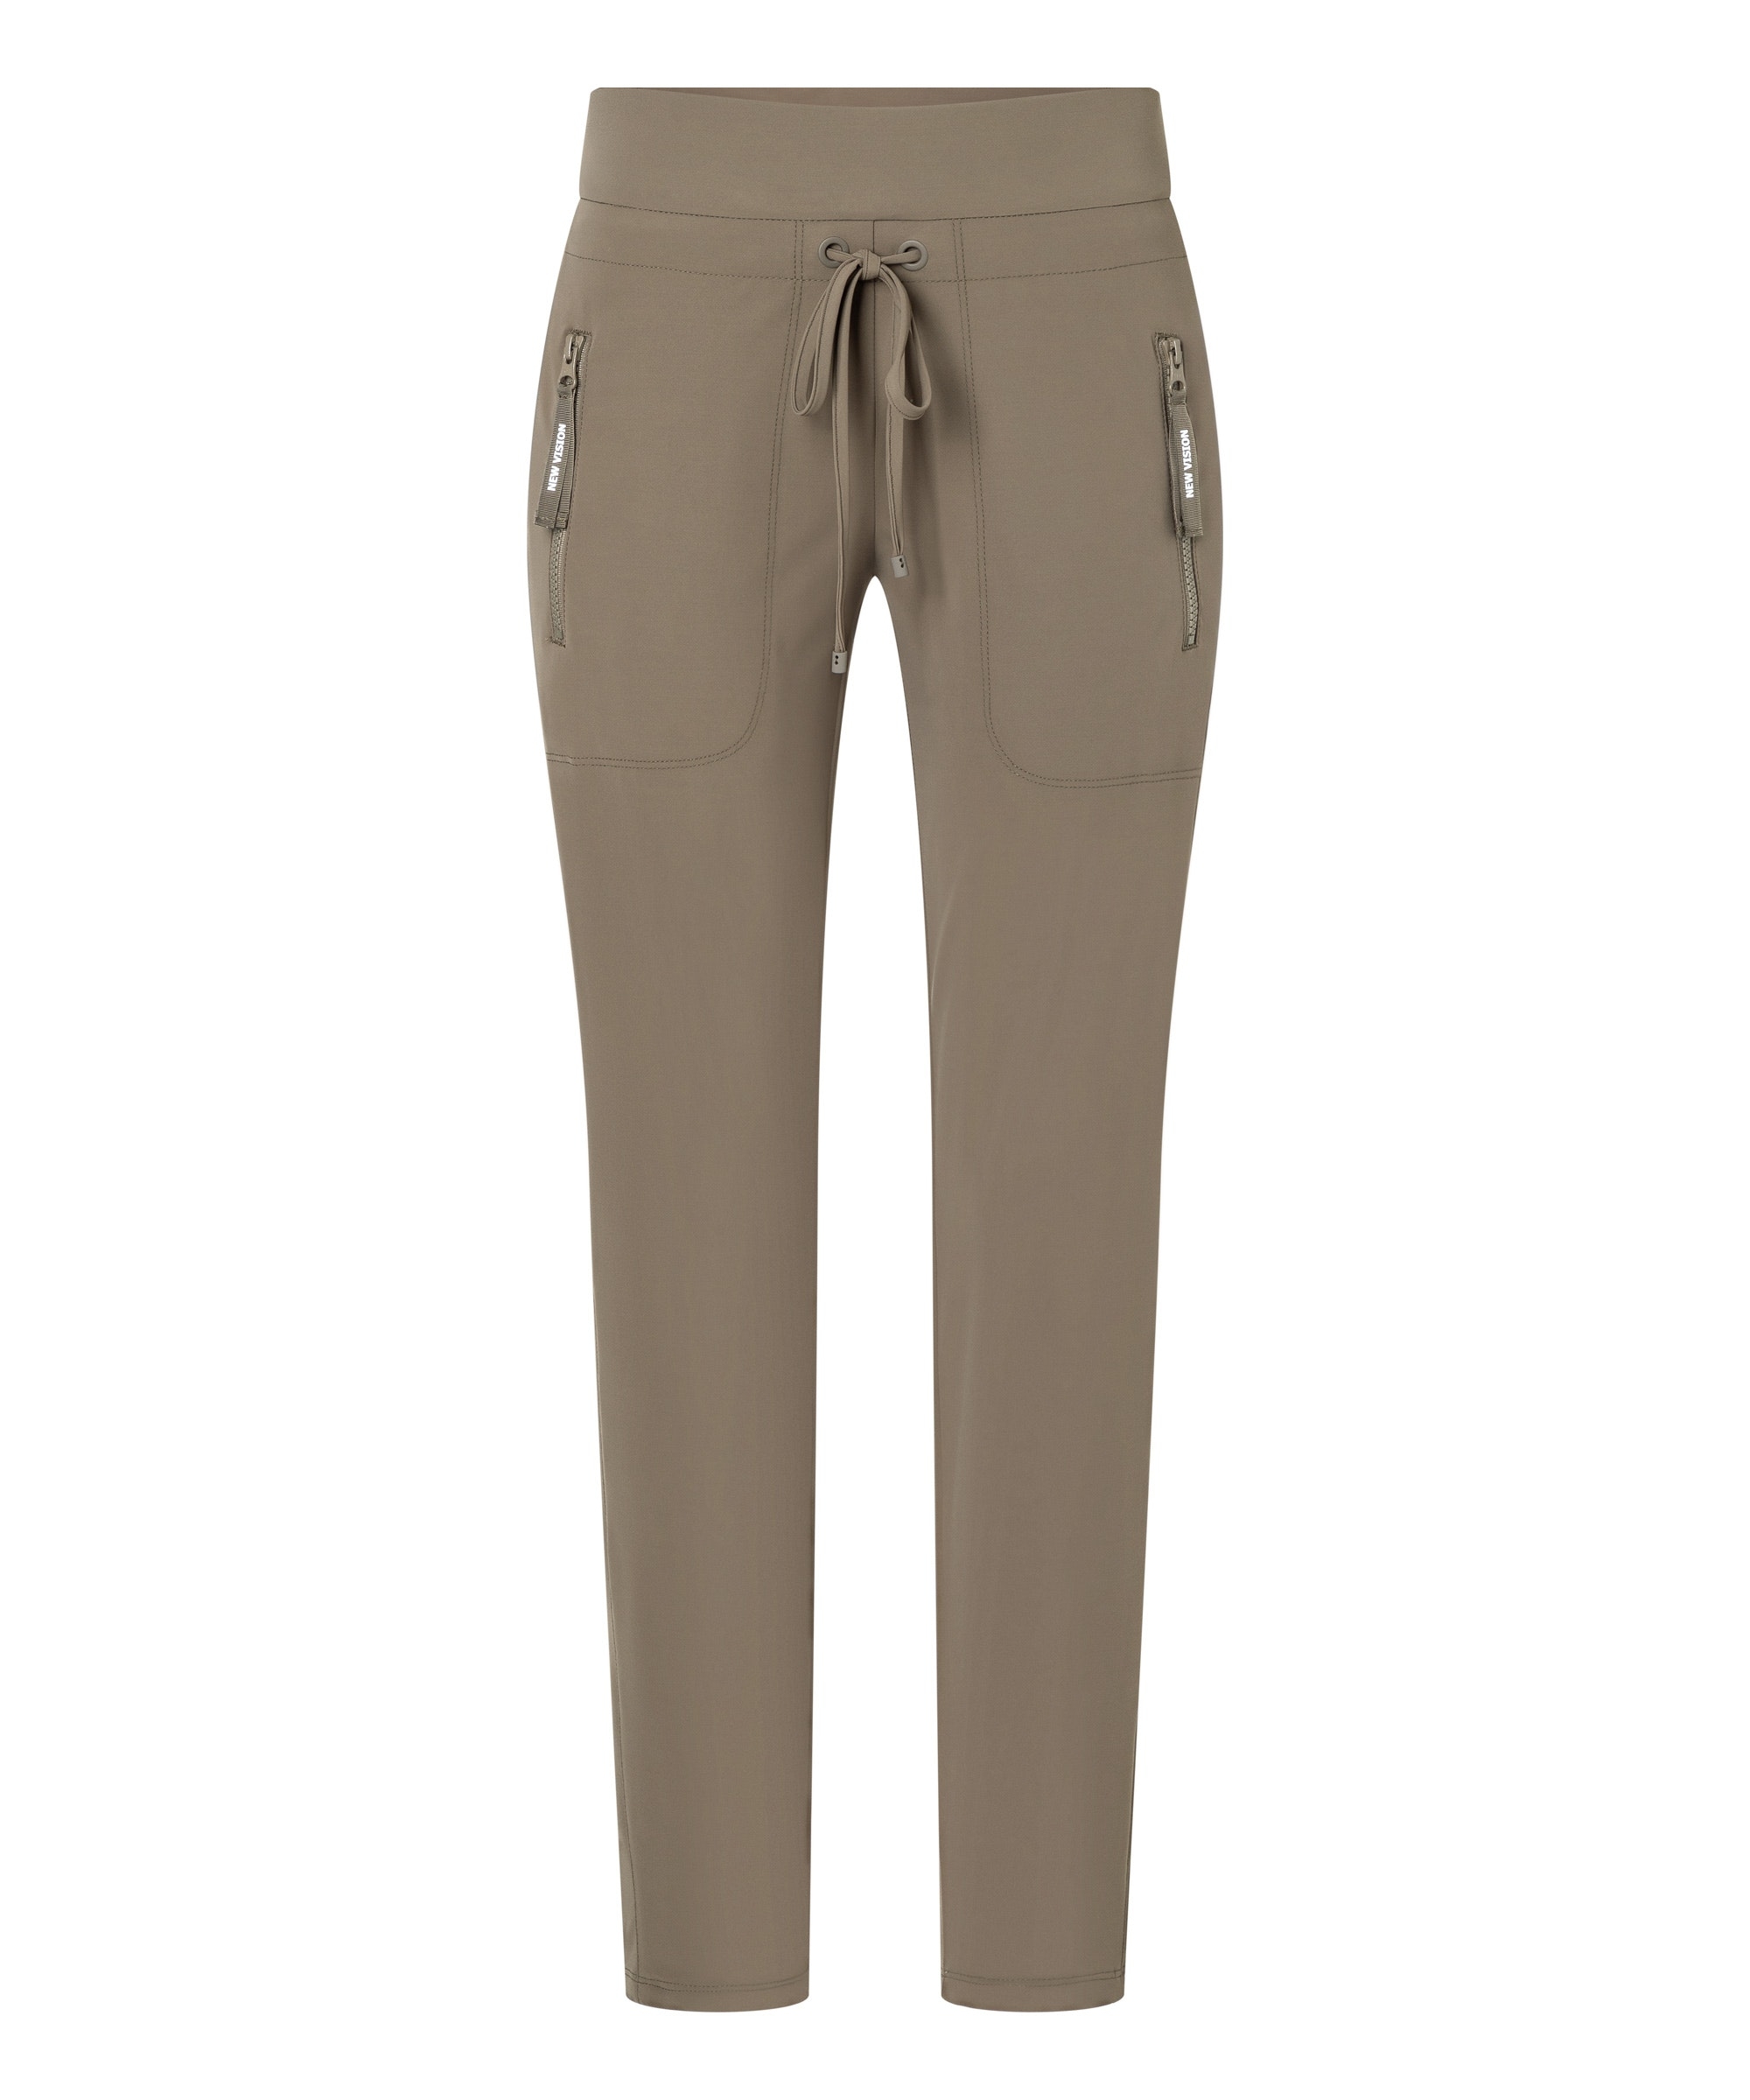 Spodnie dresowe, guma w pasie, kieszenie na suwak, kolor khaki Cambio Jessy 0280-04-6320-632